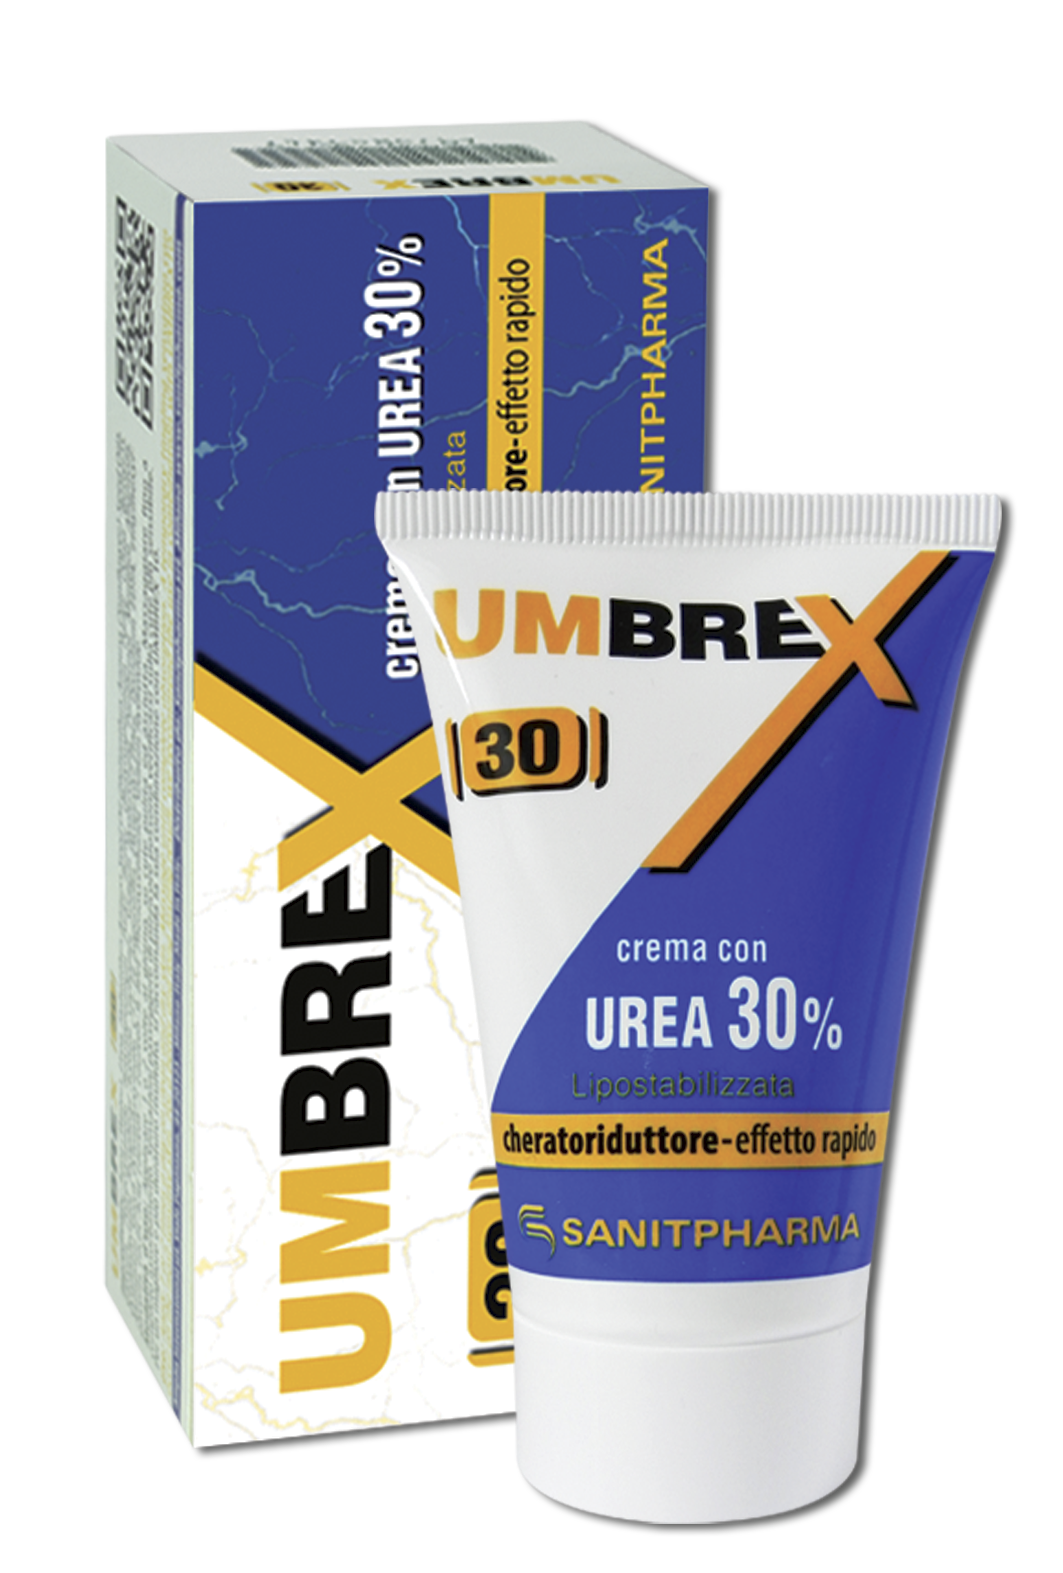 Umbrex 30